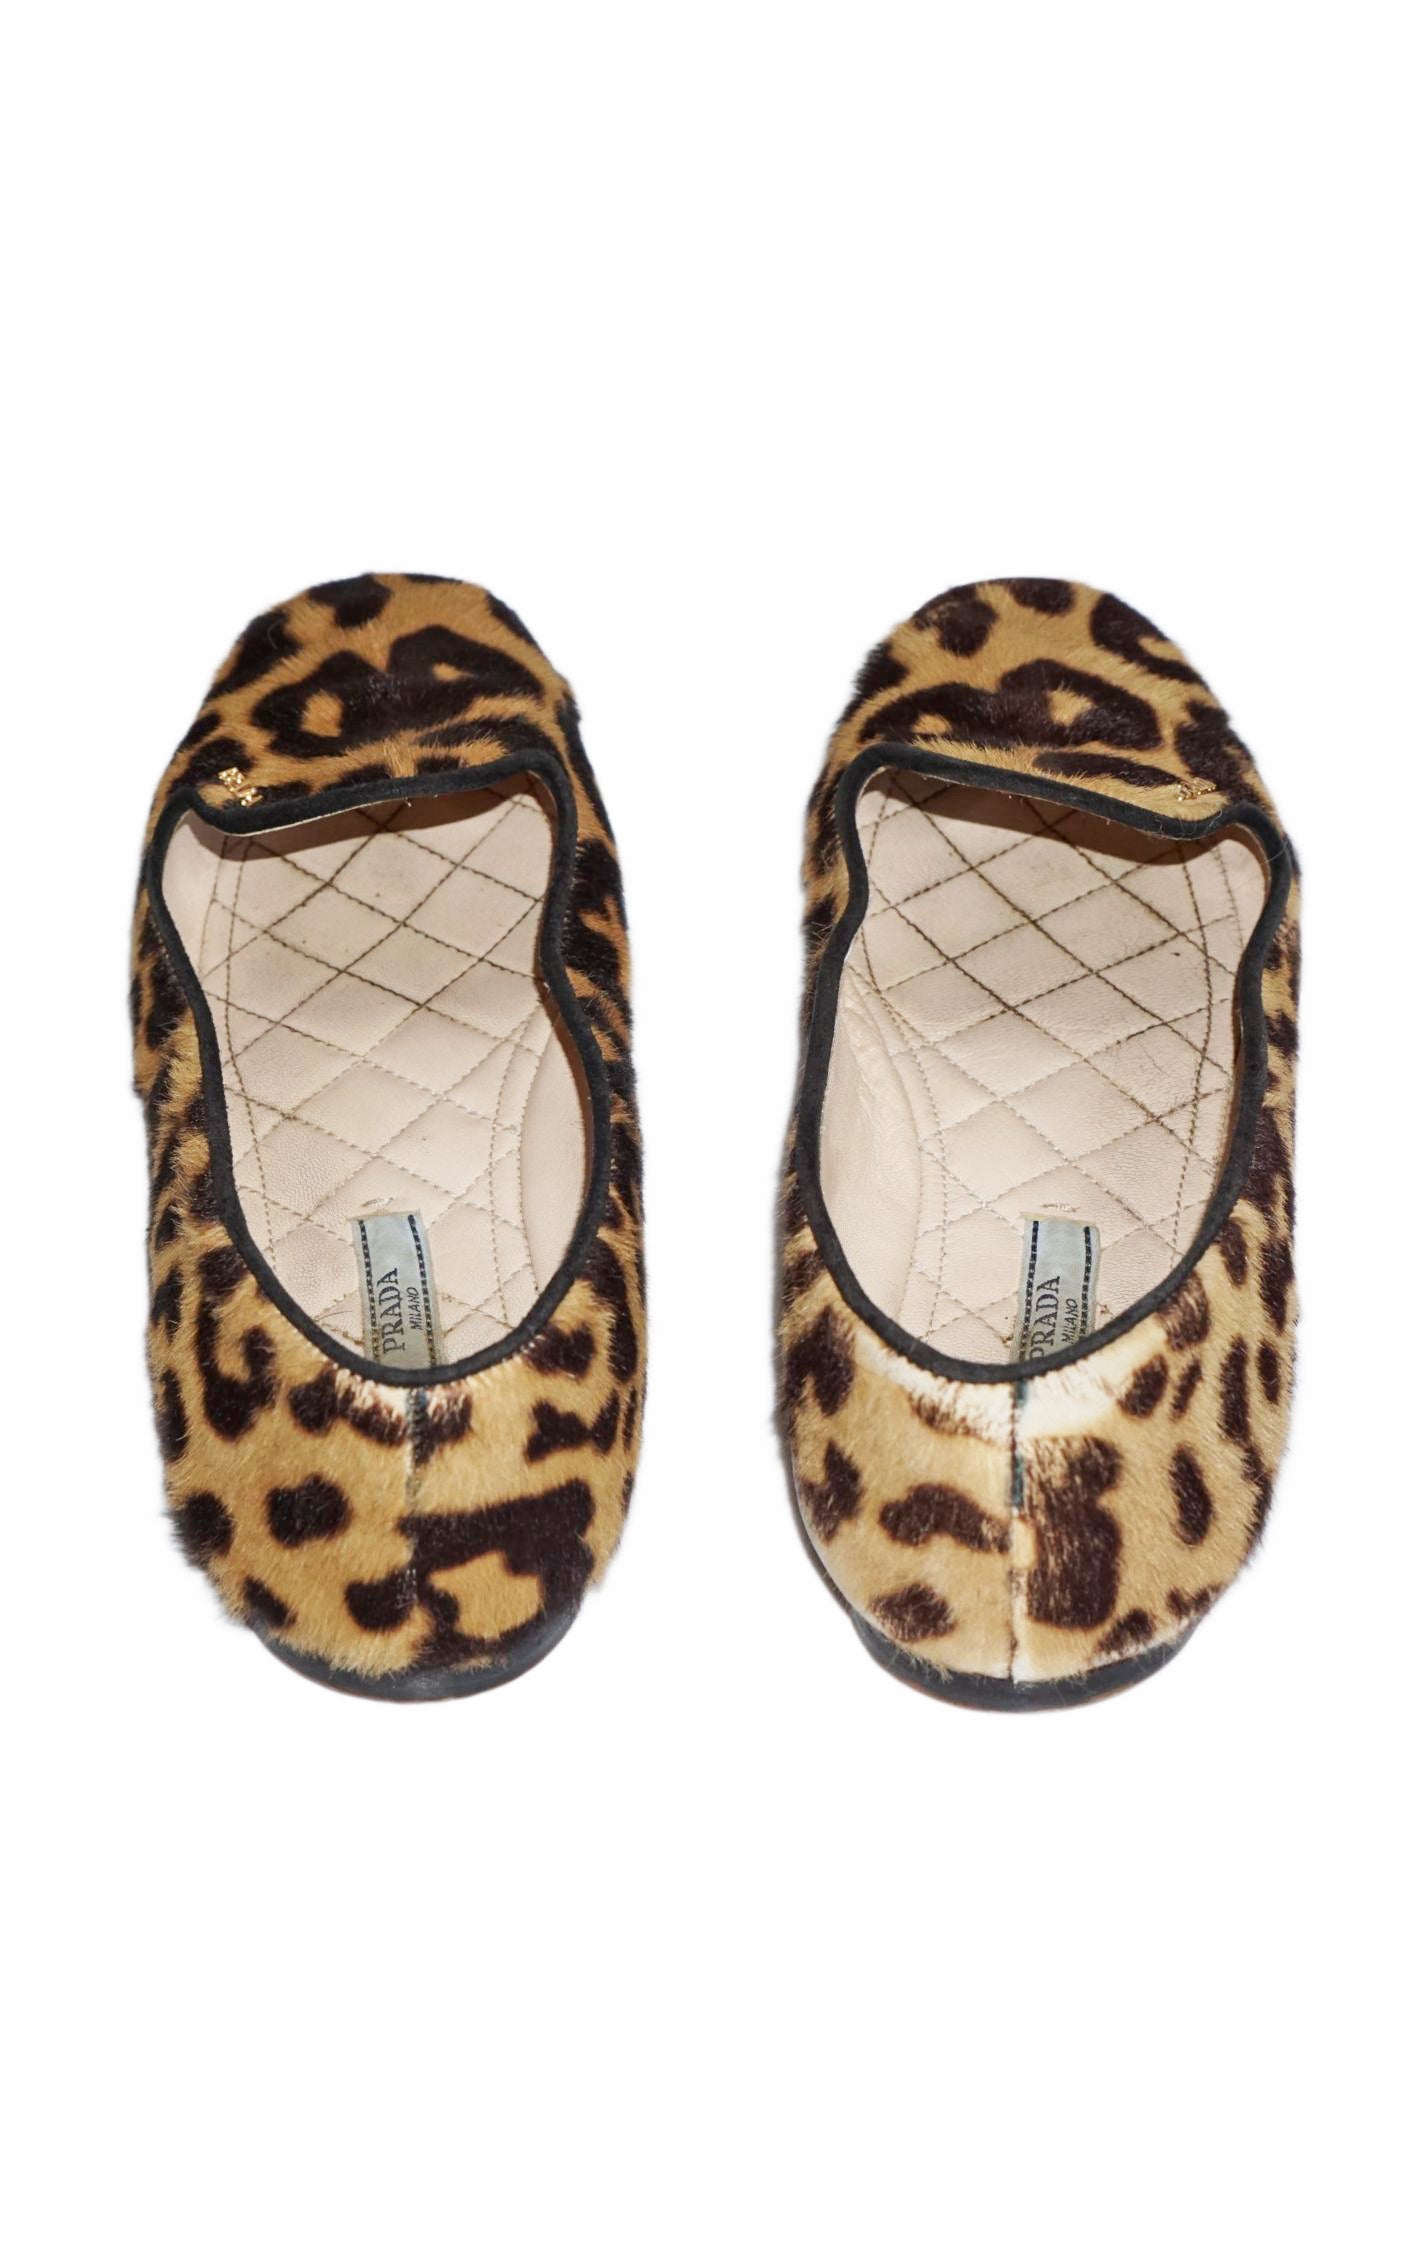 PRADA Logo Leopard Cheetah Calf Hair Slipper Flats